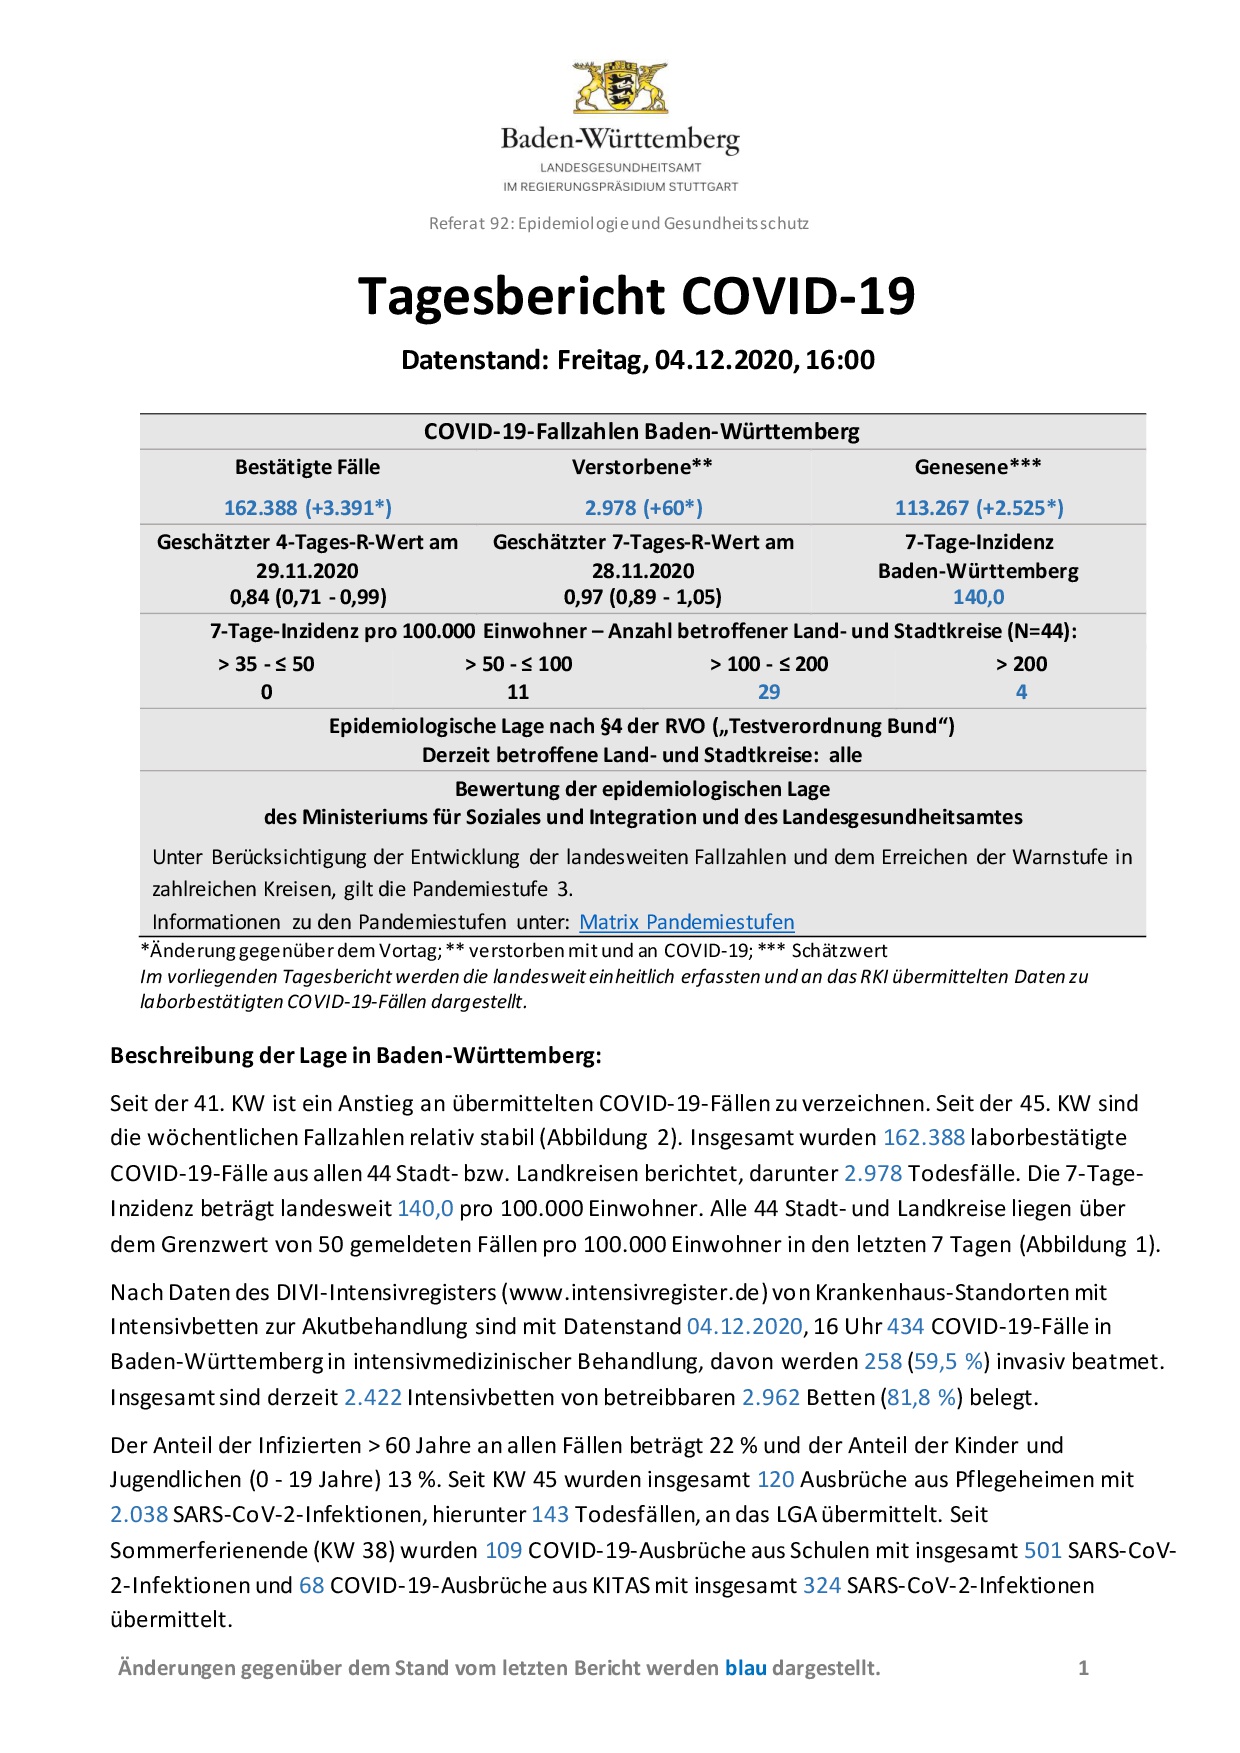 COVID-19 Tagesbericht (04.12.2020) des Landesgesundheitsamts Baden-Württemberg – (ausführlicher)